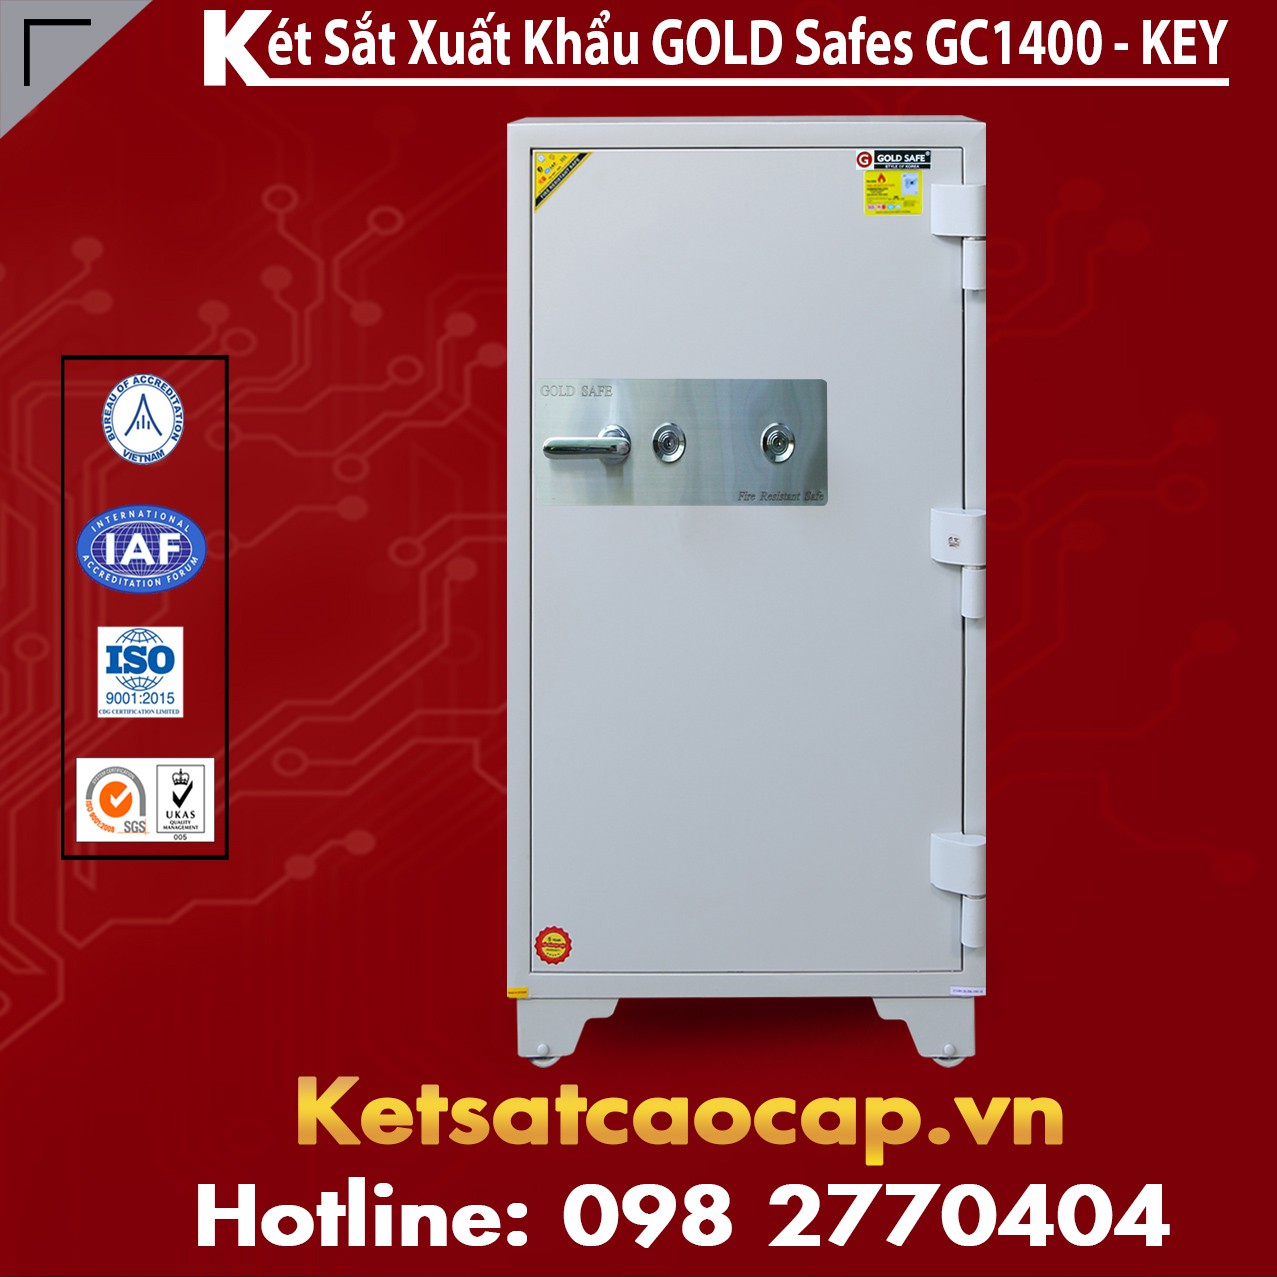 Két Sắt Đại Gia GOLD SAFES GC1400 KEY